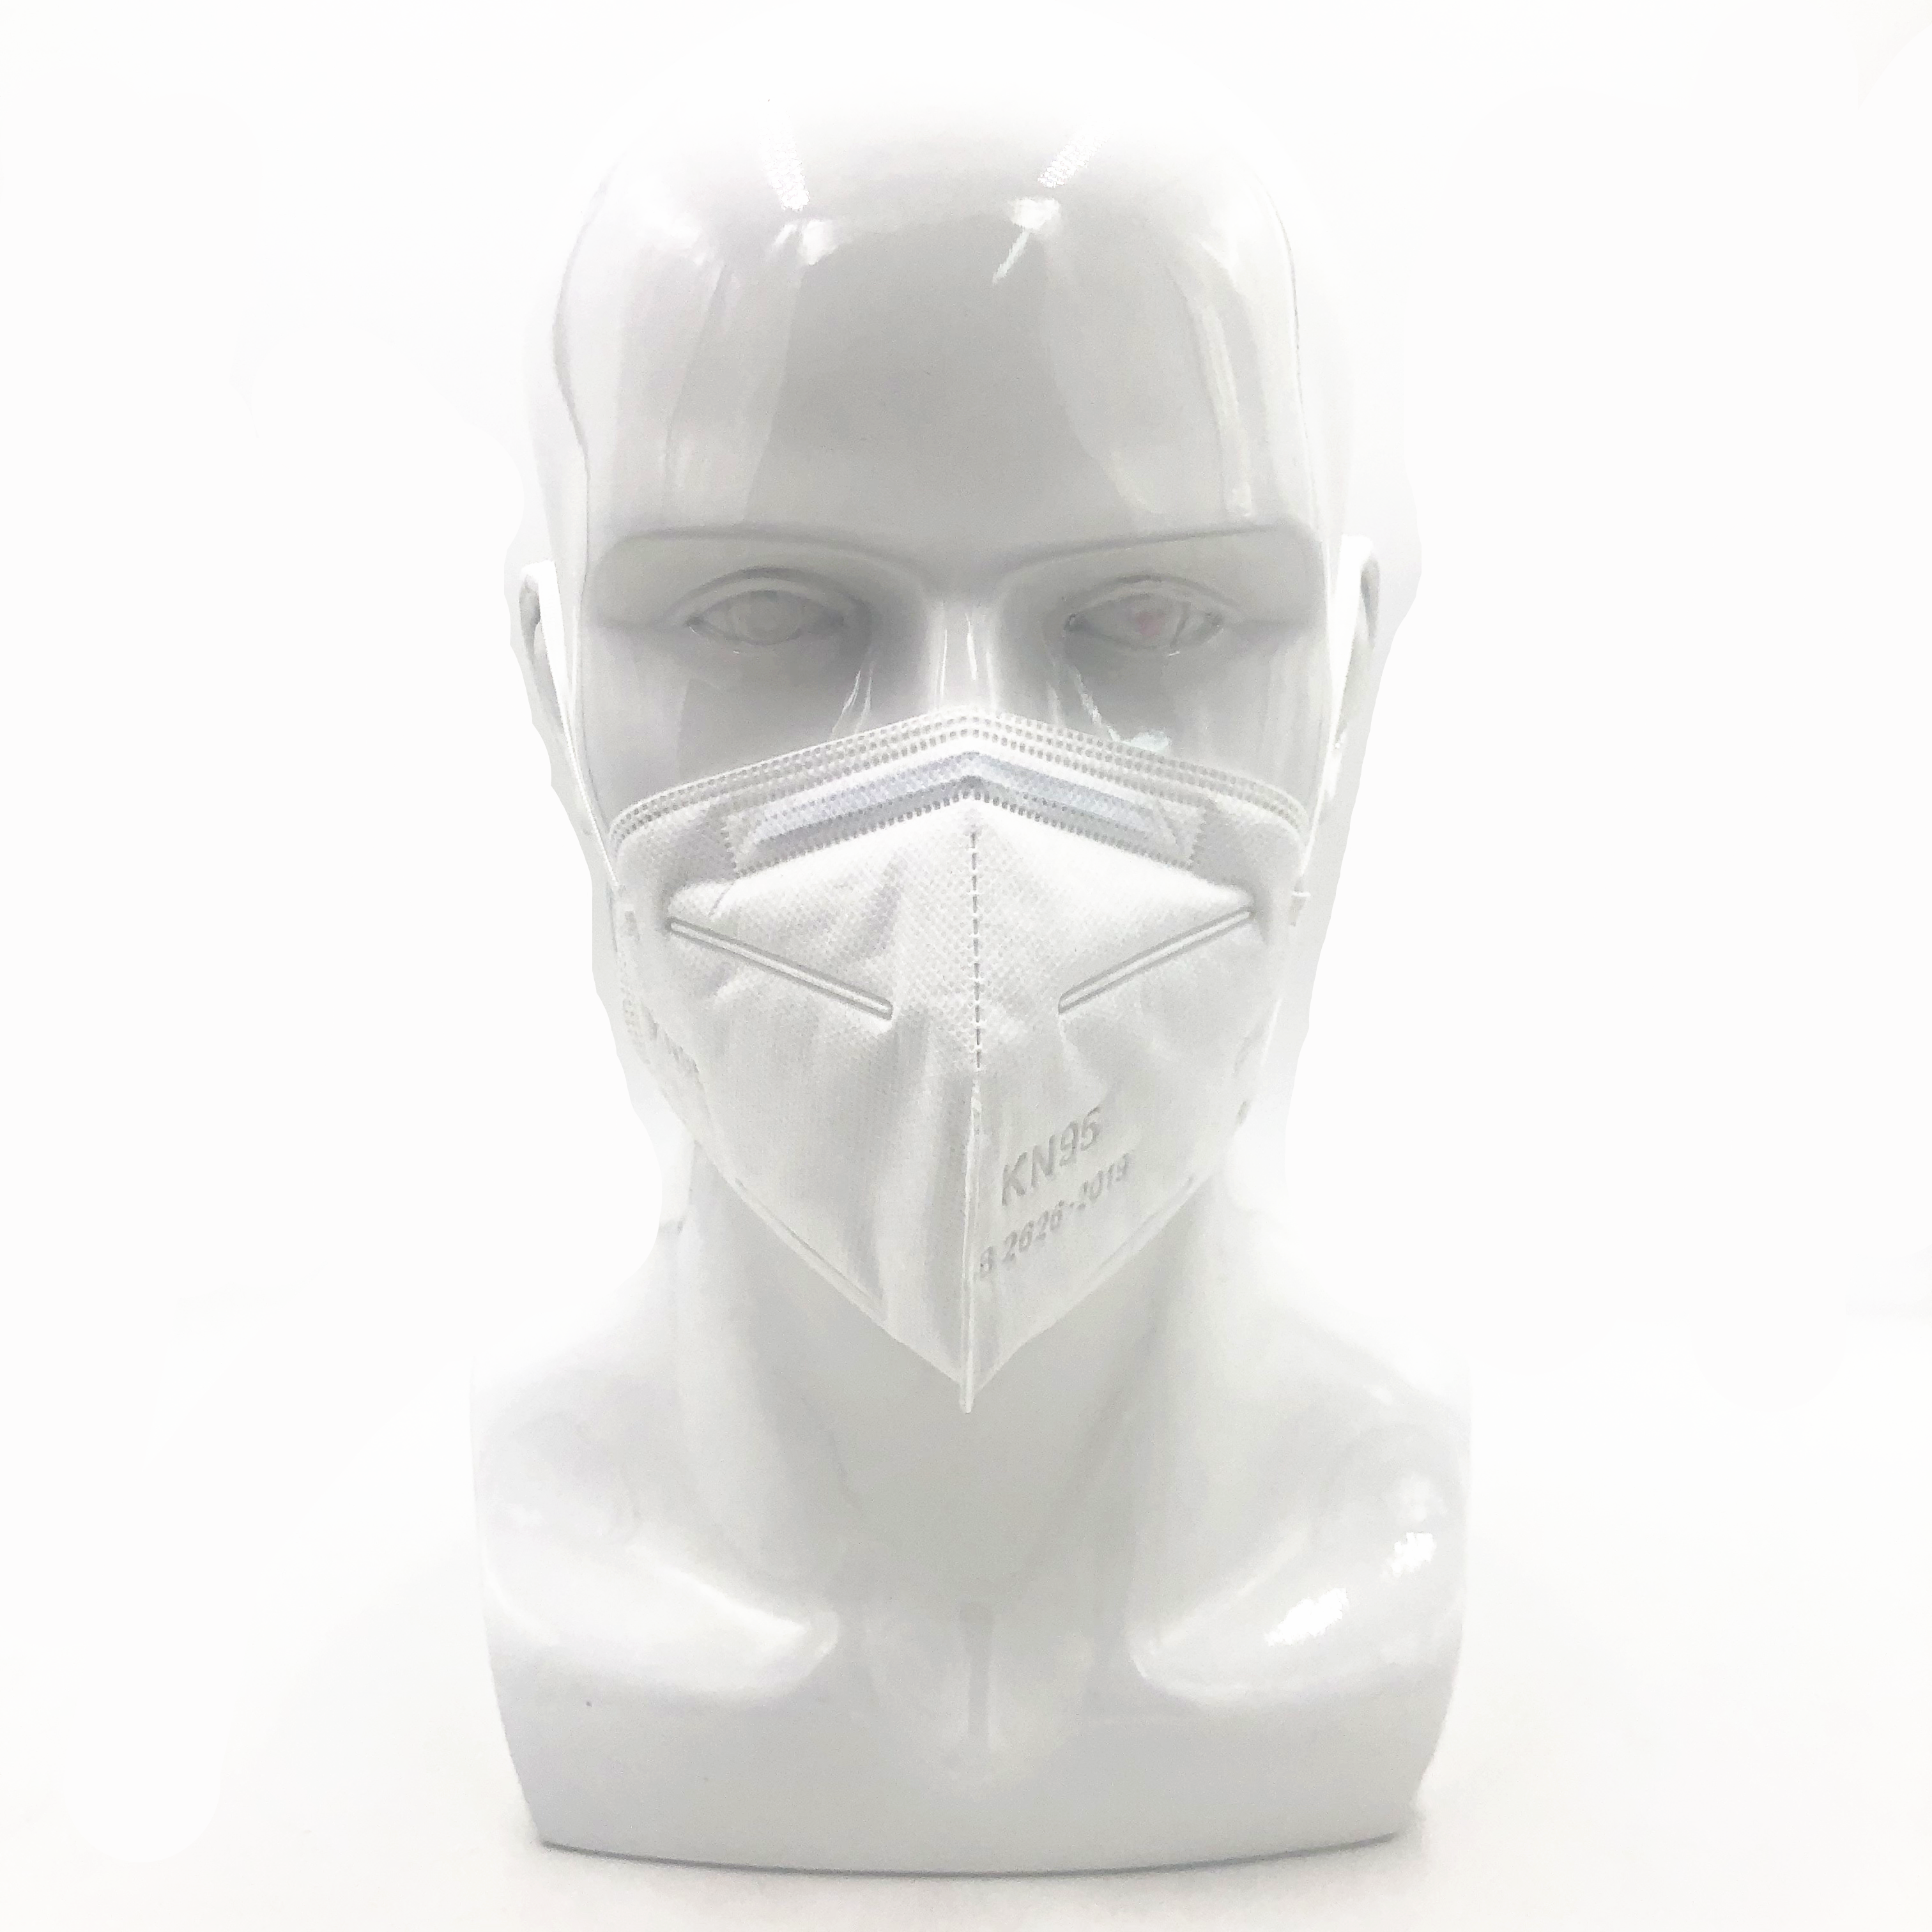 Maschera facciale monouso a 5 strati traspirante di alta qualità anti polvere